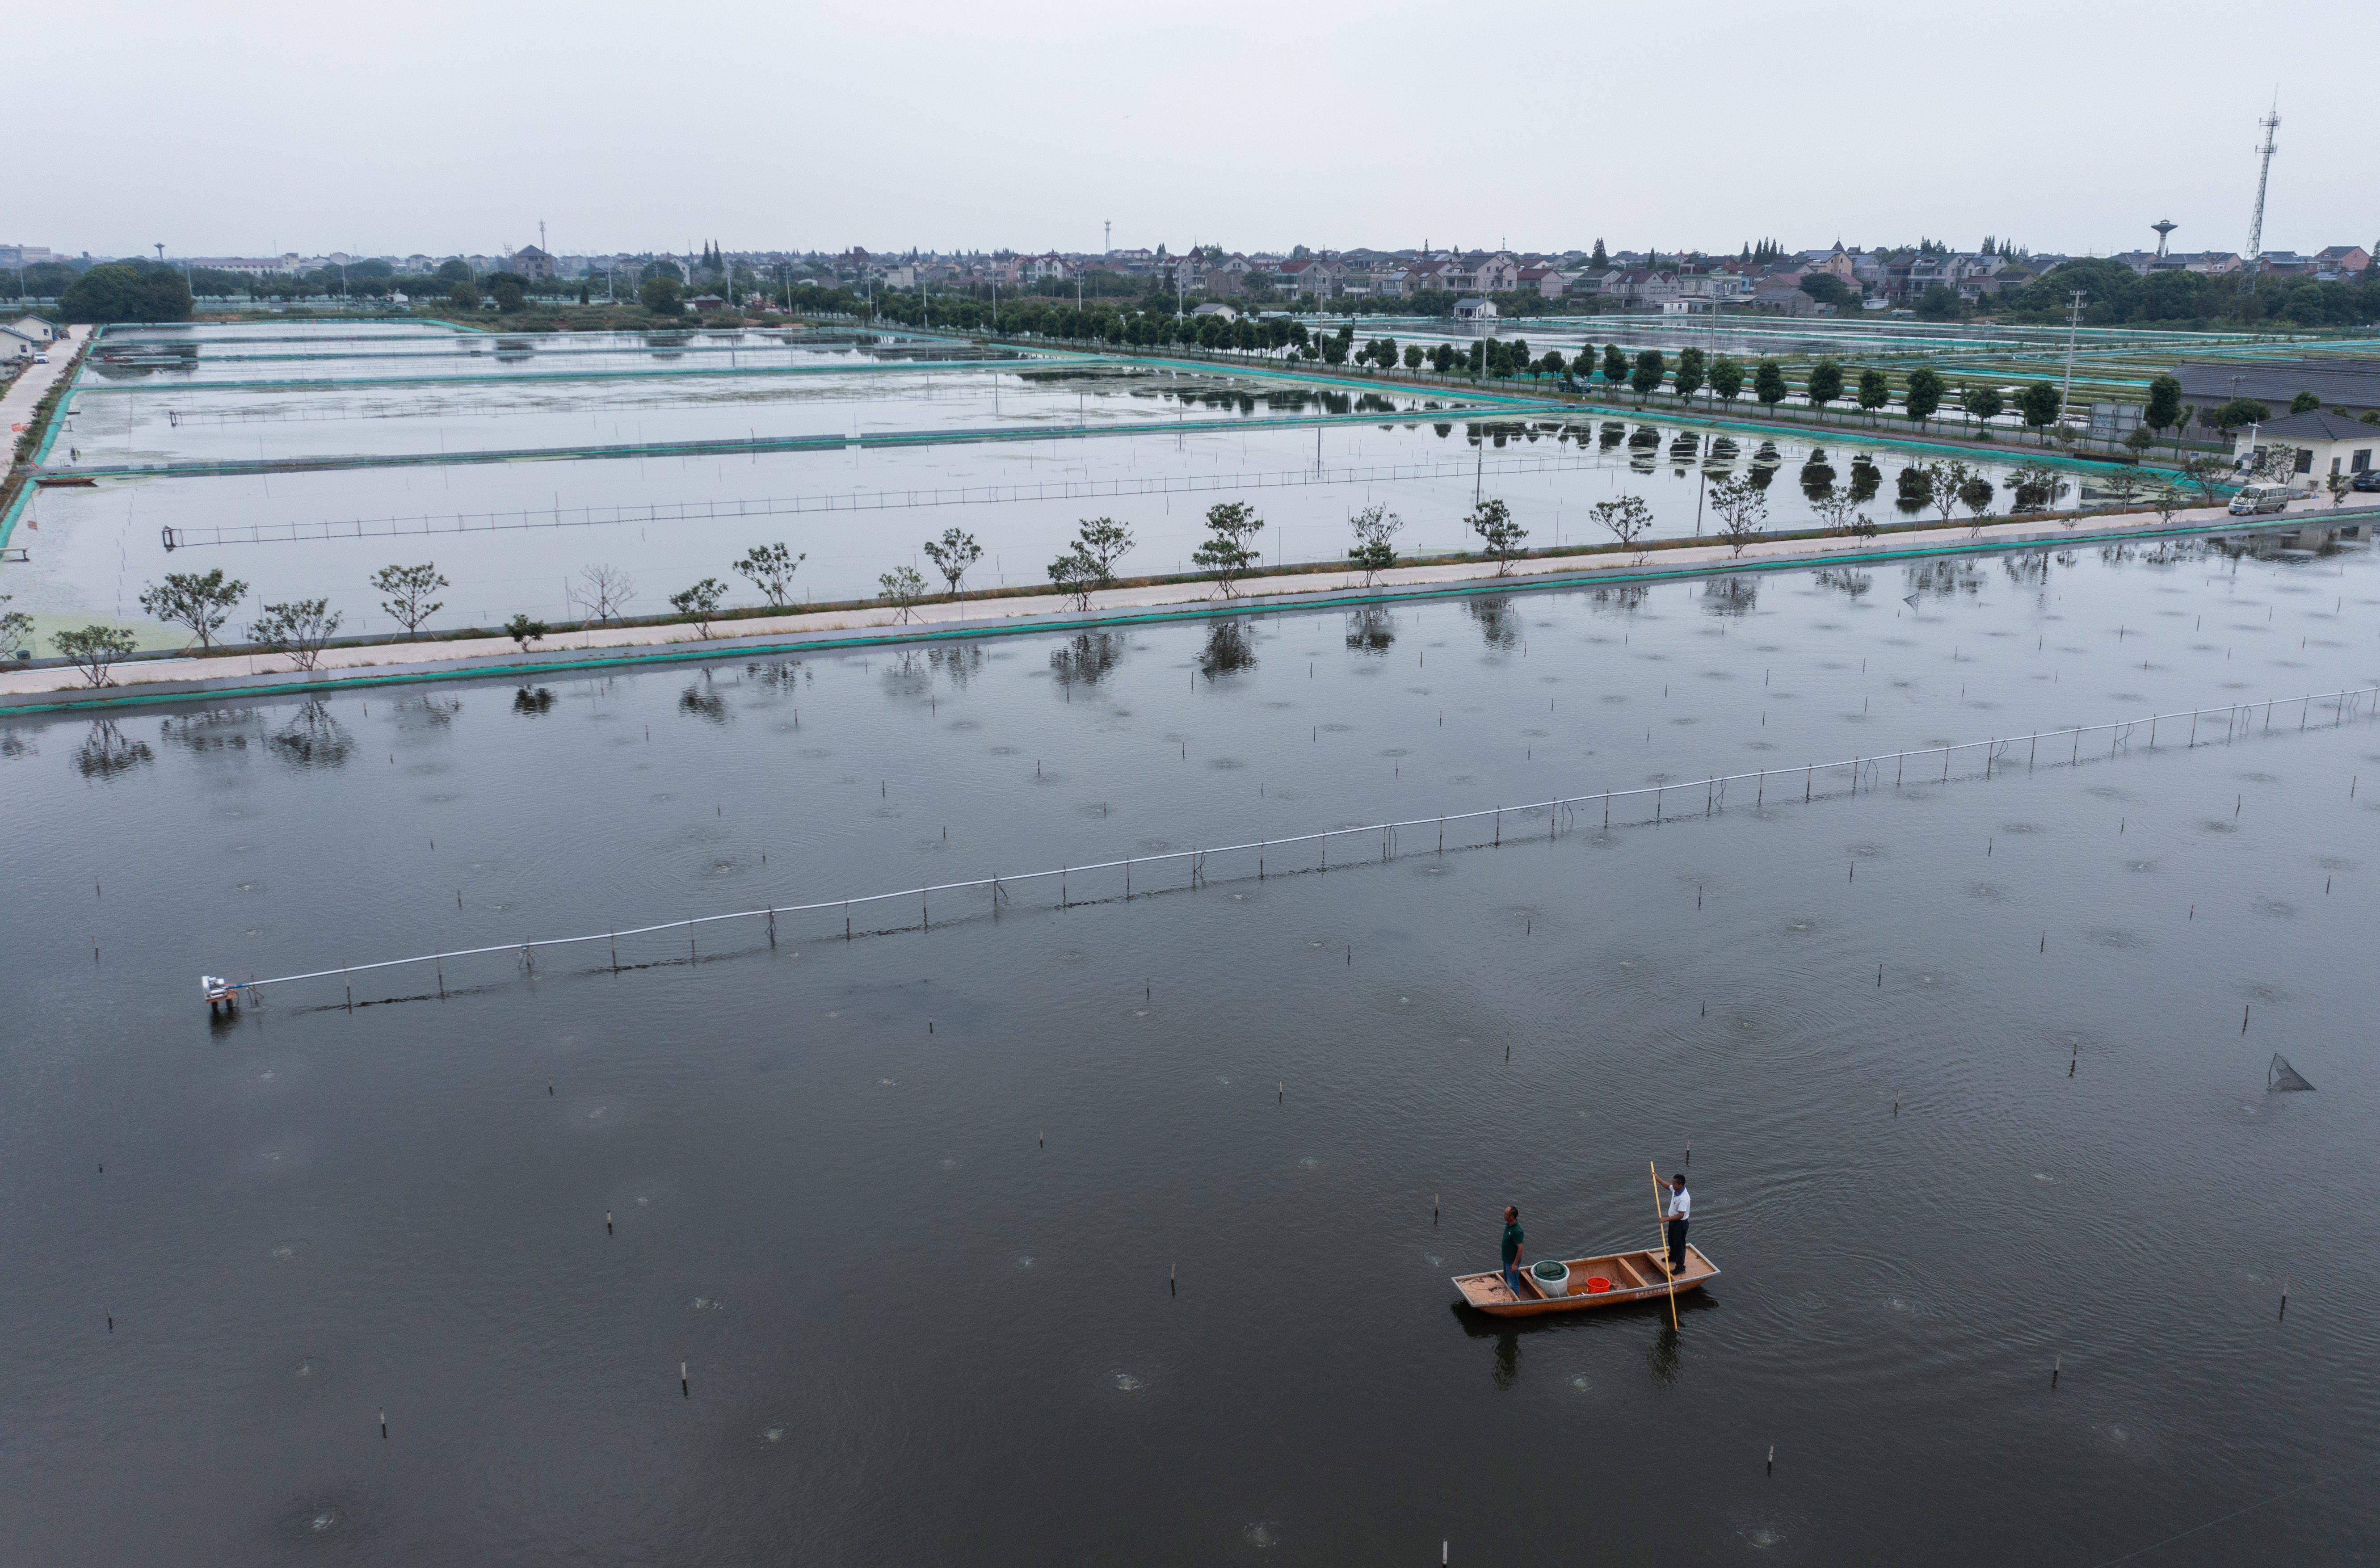 浙江湖州:推进特色生态水产养殖 助力乡村共同富裕